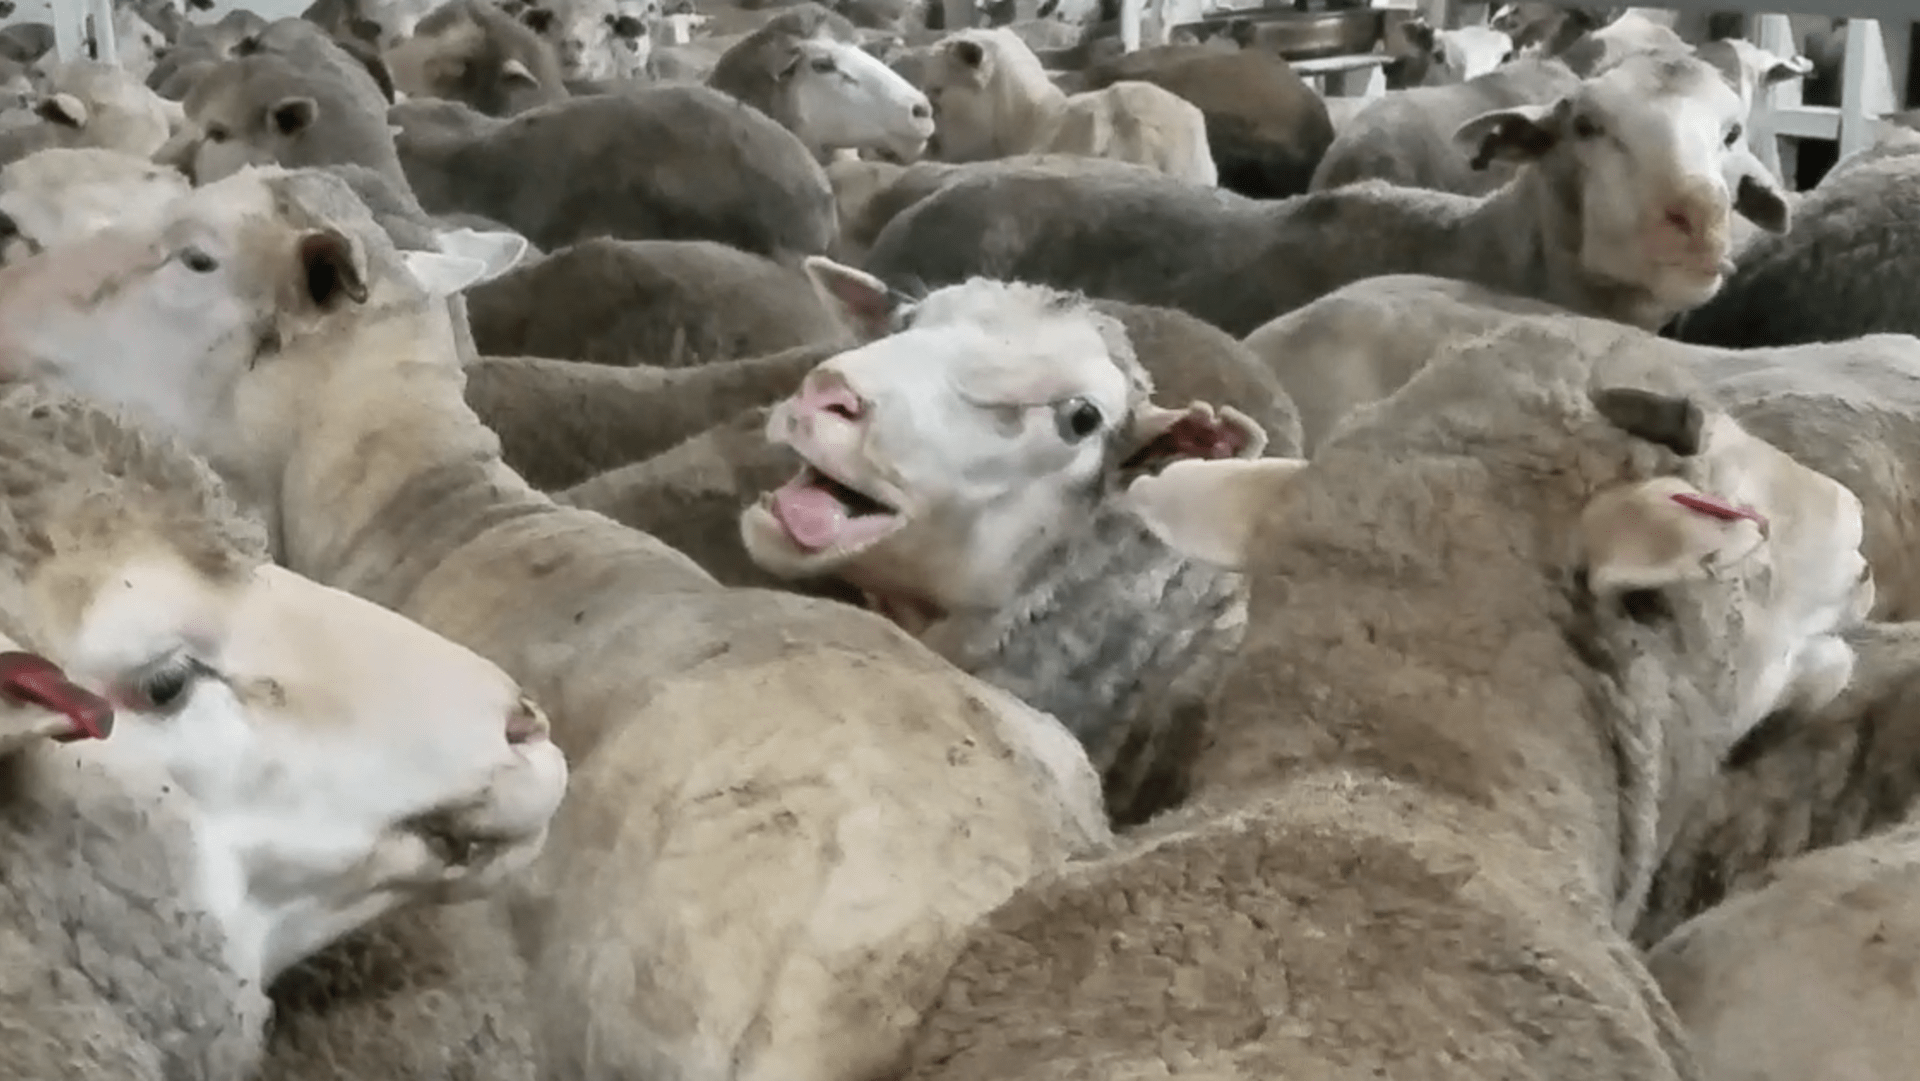 Cesta ovcí z Austrálie na Střední východ. V některých případech nepřežily samotný transport tisíce zvířat